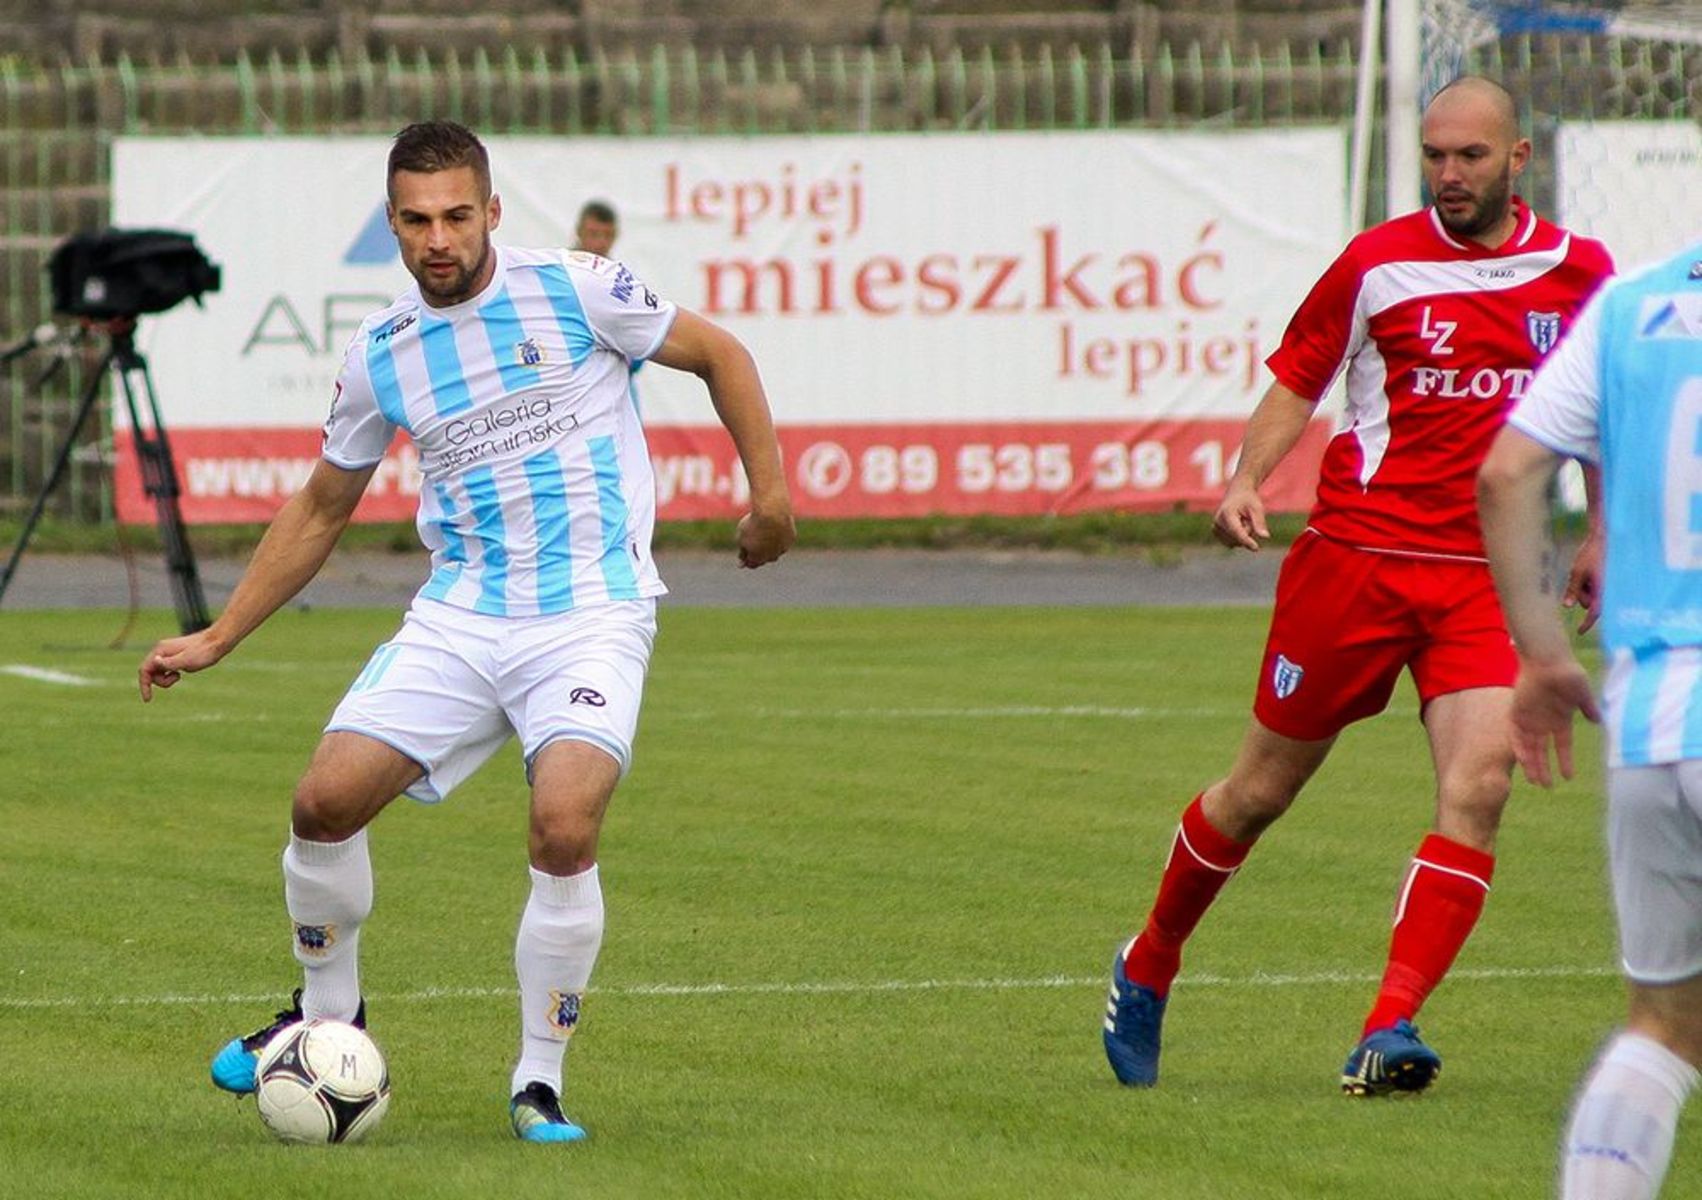 Występ Michała Glanowskiego spowodował, że drużyna z Węgorzewa może cieszyć się z trzech punktów. Fot. Artur Szczepański